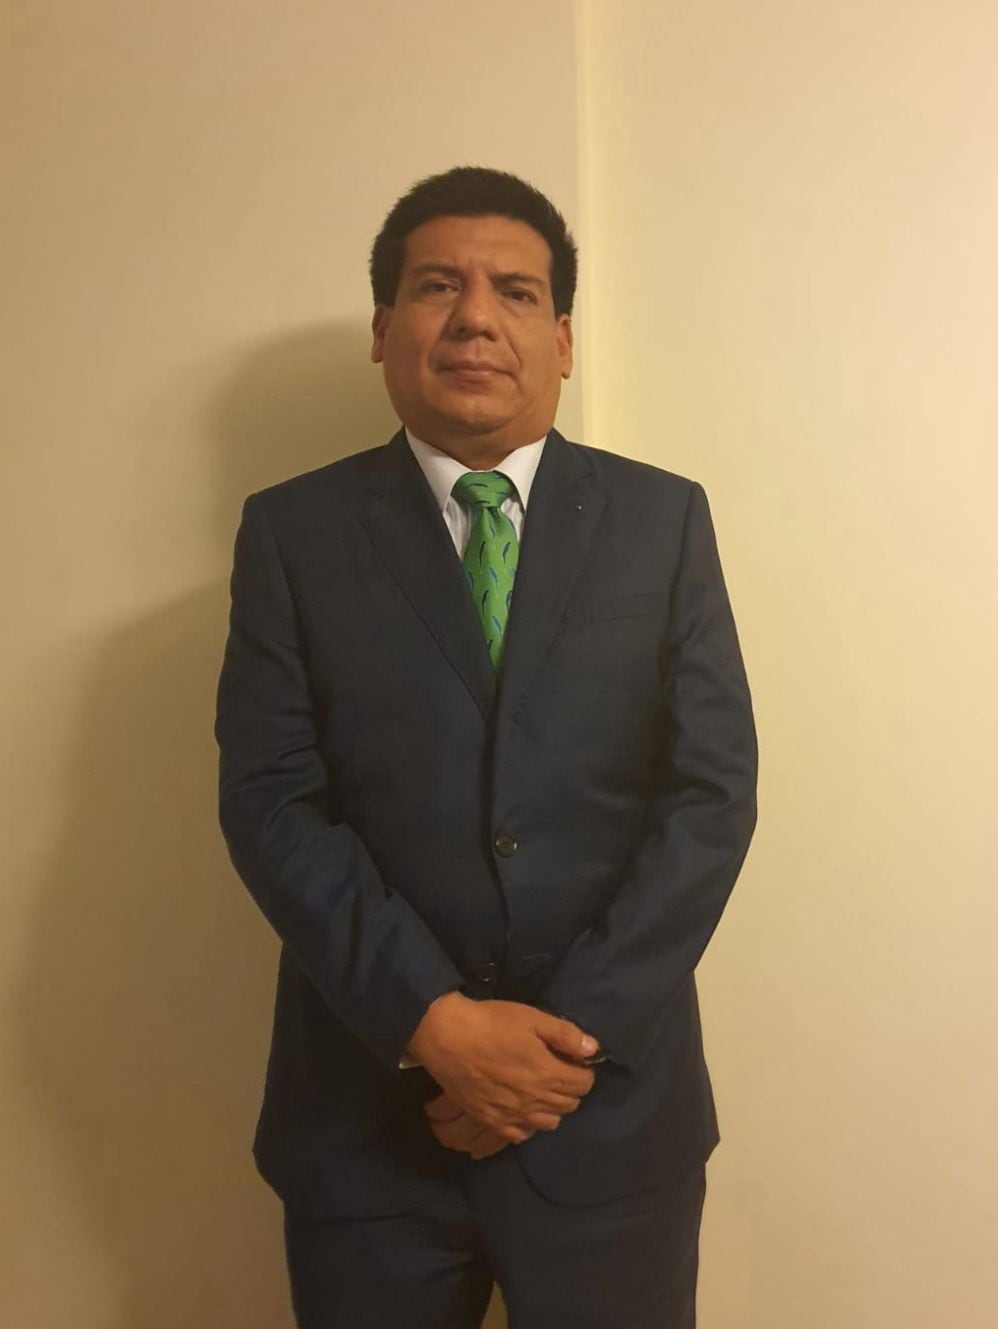 El reconocido abogado Víctor Eduardo Muñoz, abogado penalista y especialista en delitos financieros. Hoy es el apoderado de Omar Hernández.